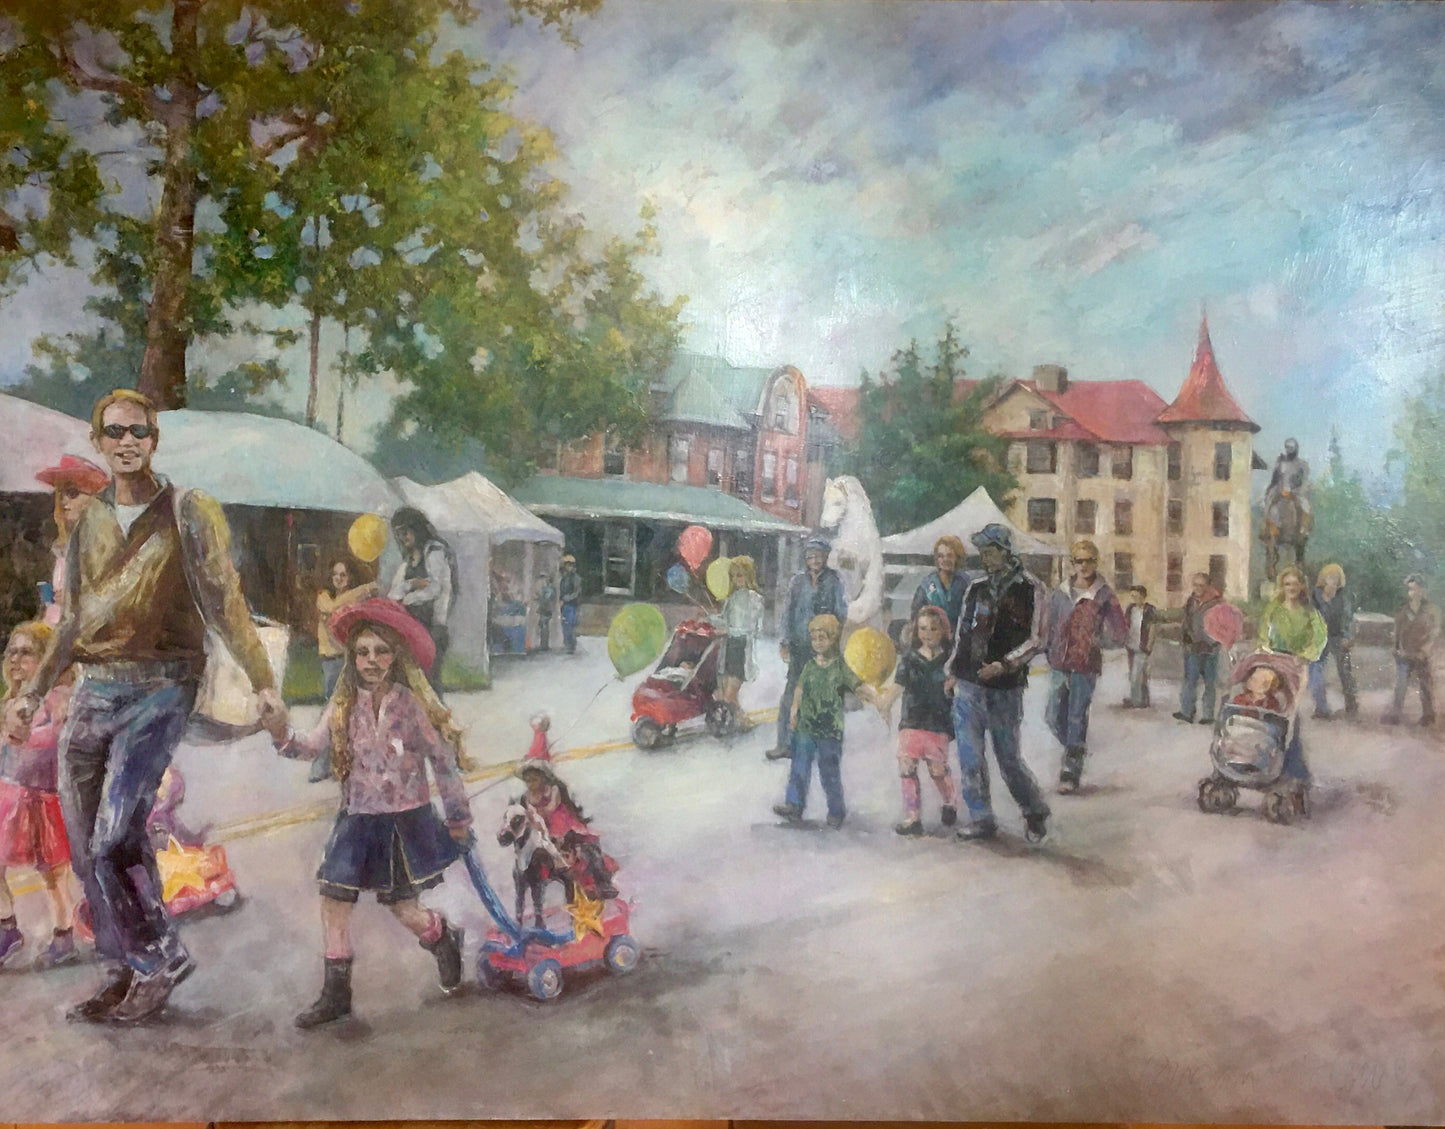 Village Art Show